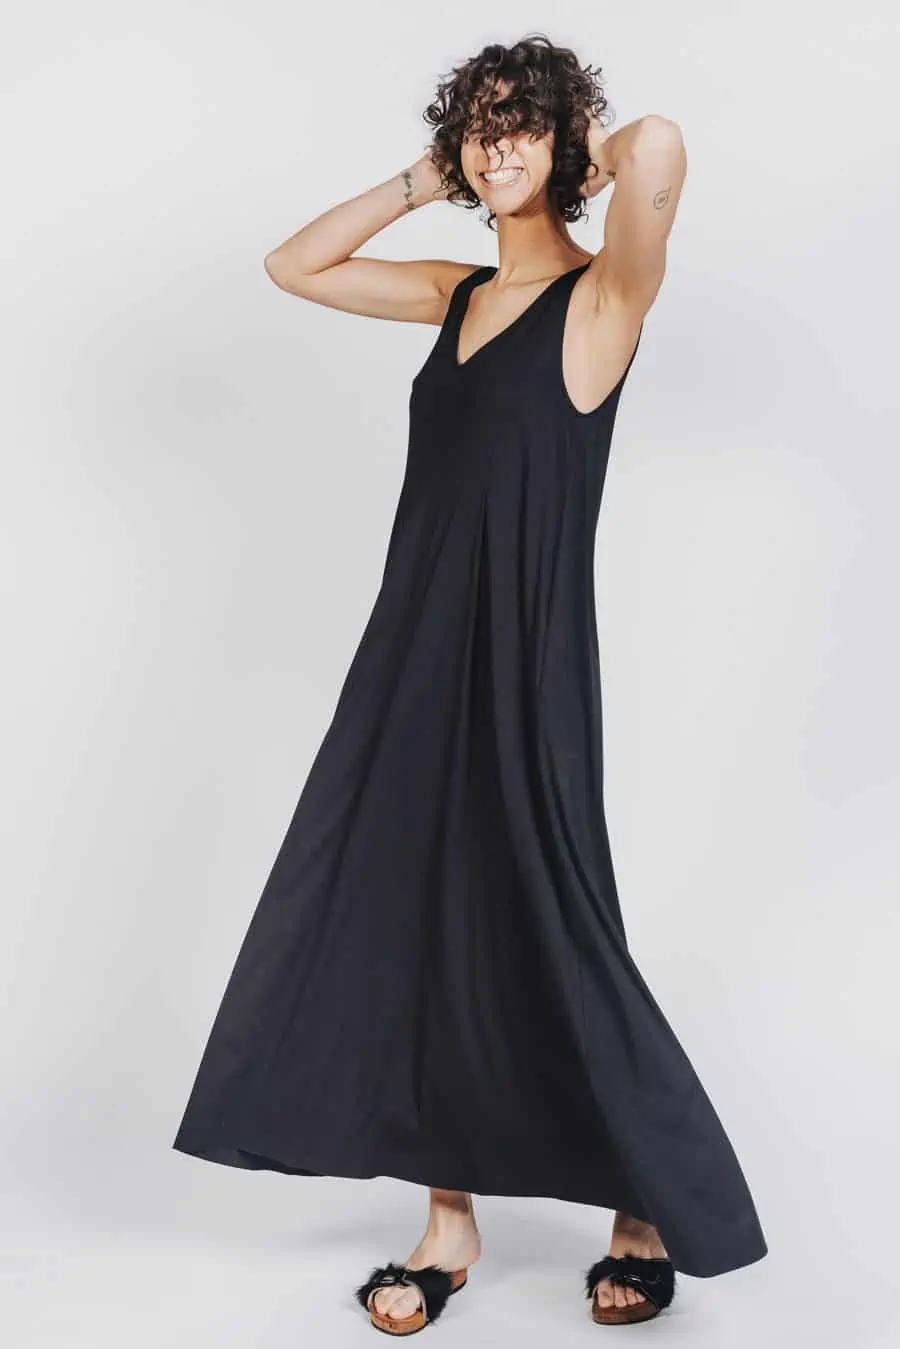 Deep White Black Modell SASHA langes Kleid schwarz mit schwarzen Fellsandalen aus Holz von Devich, ärmelloses Sommerkleid mit V-Ausschnitt, Ansicht gesamt seitlich von vorne